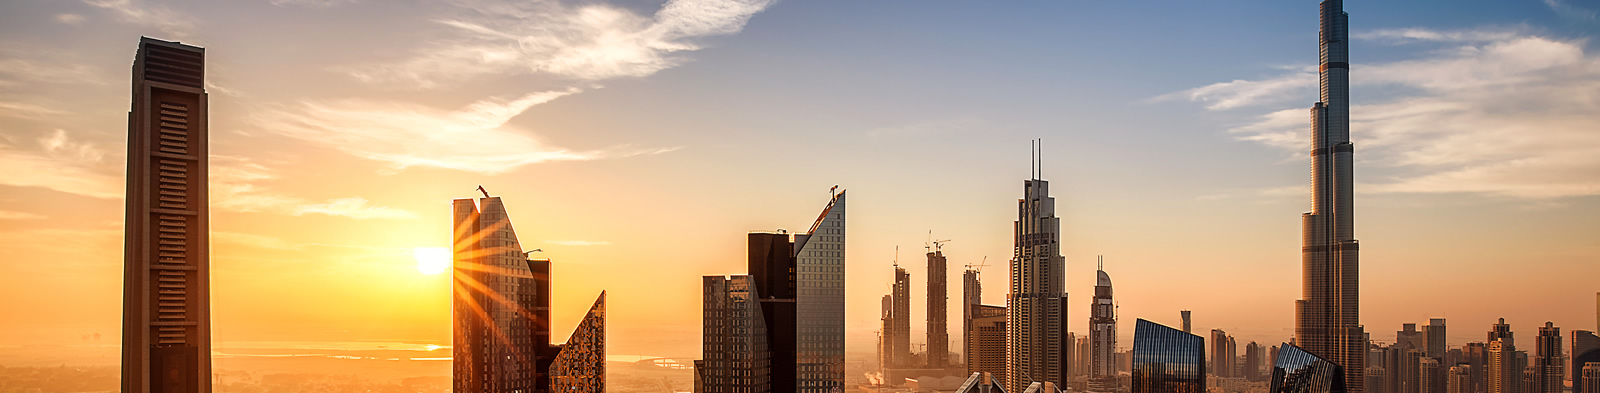 Dubai skyline bathed in sunlight